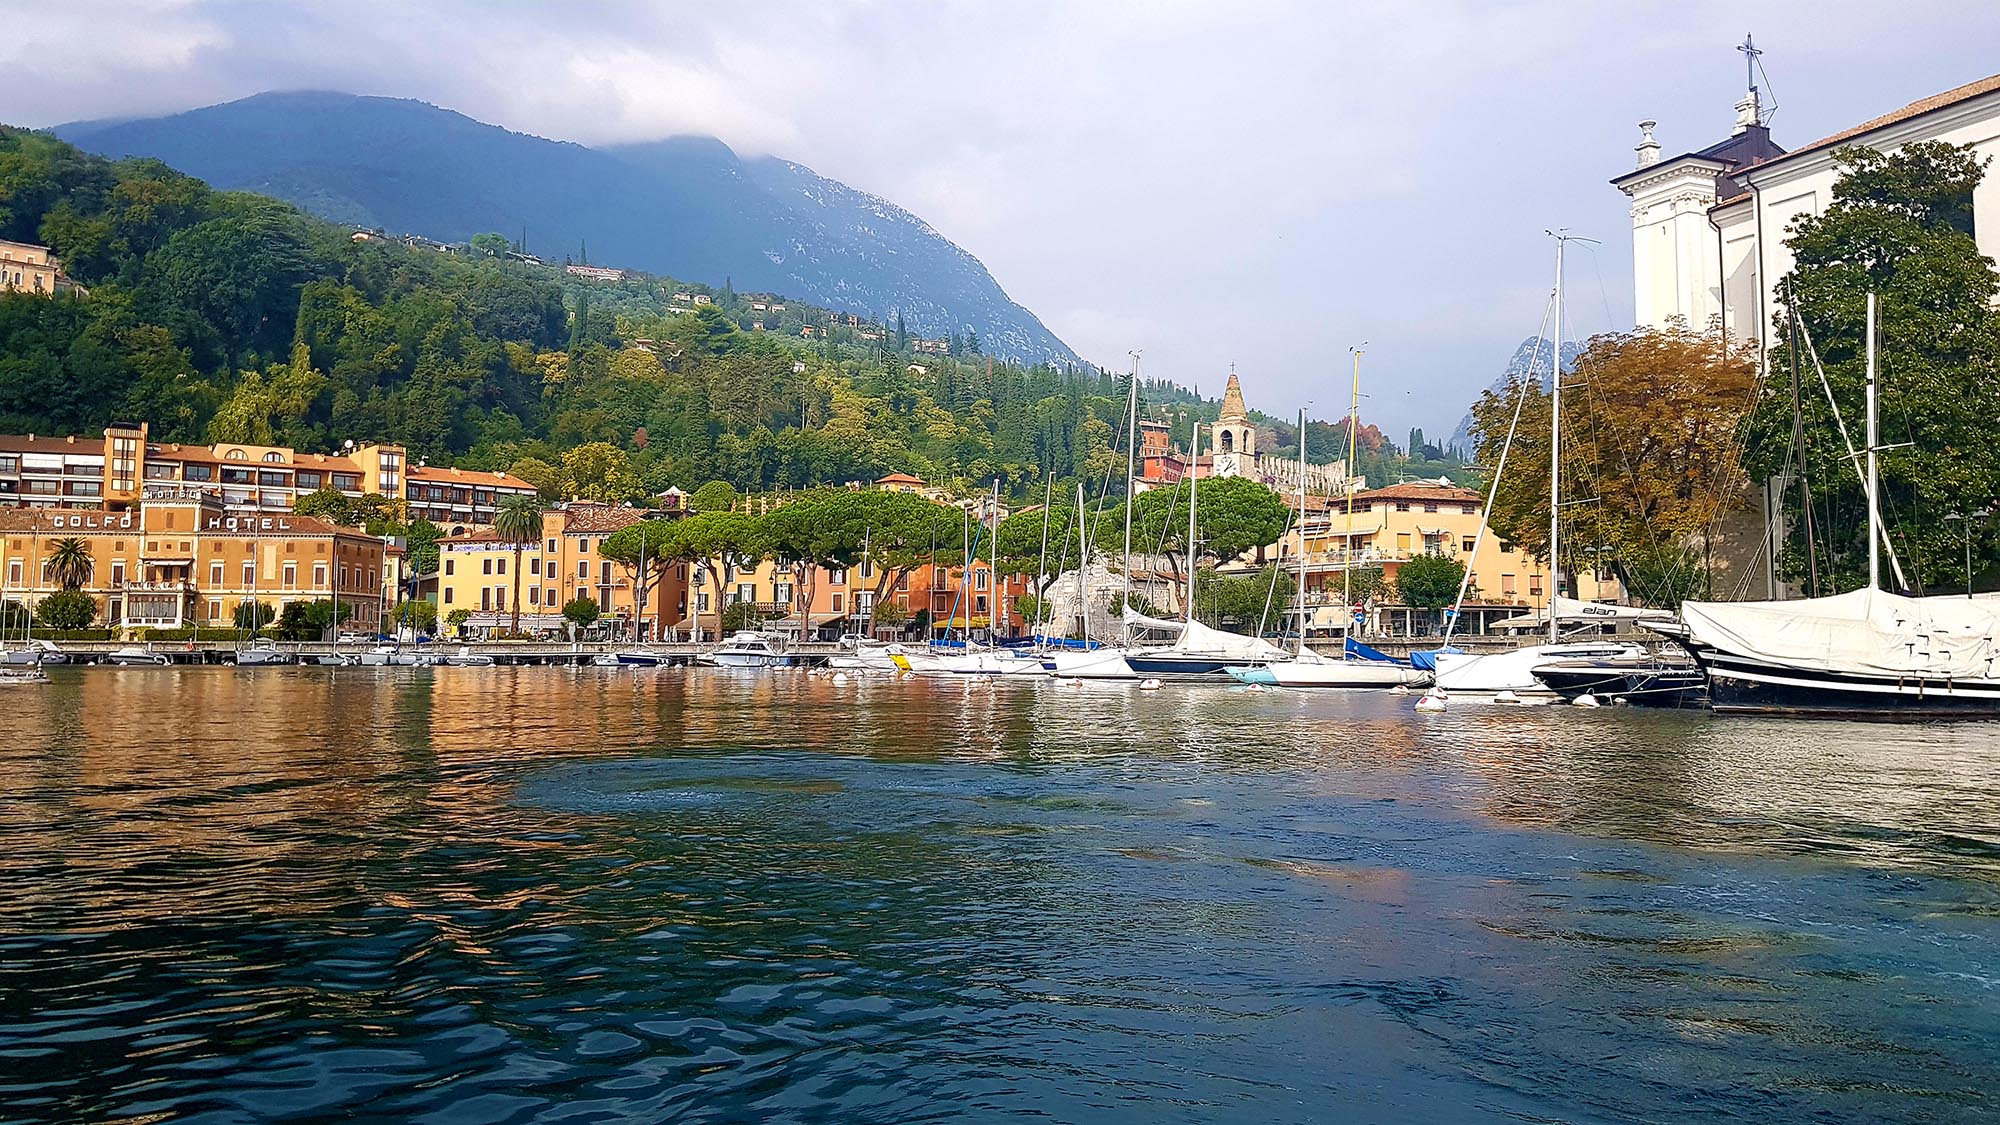 Lake Garda in focus